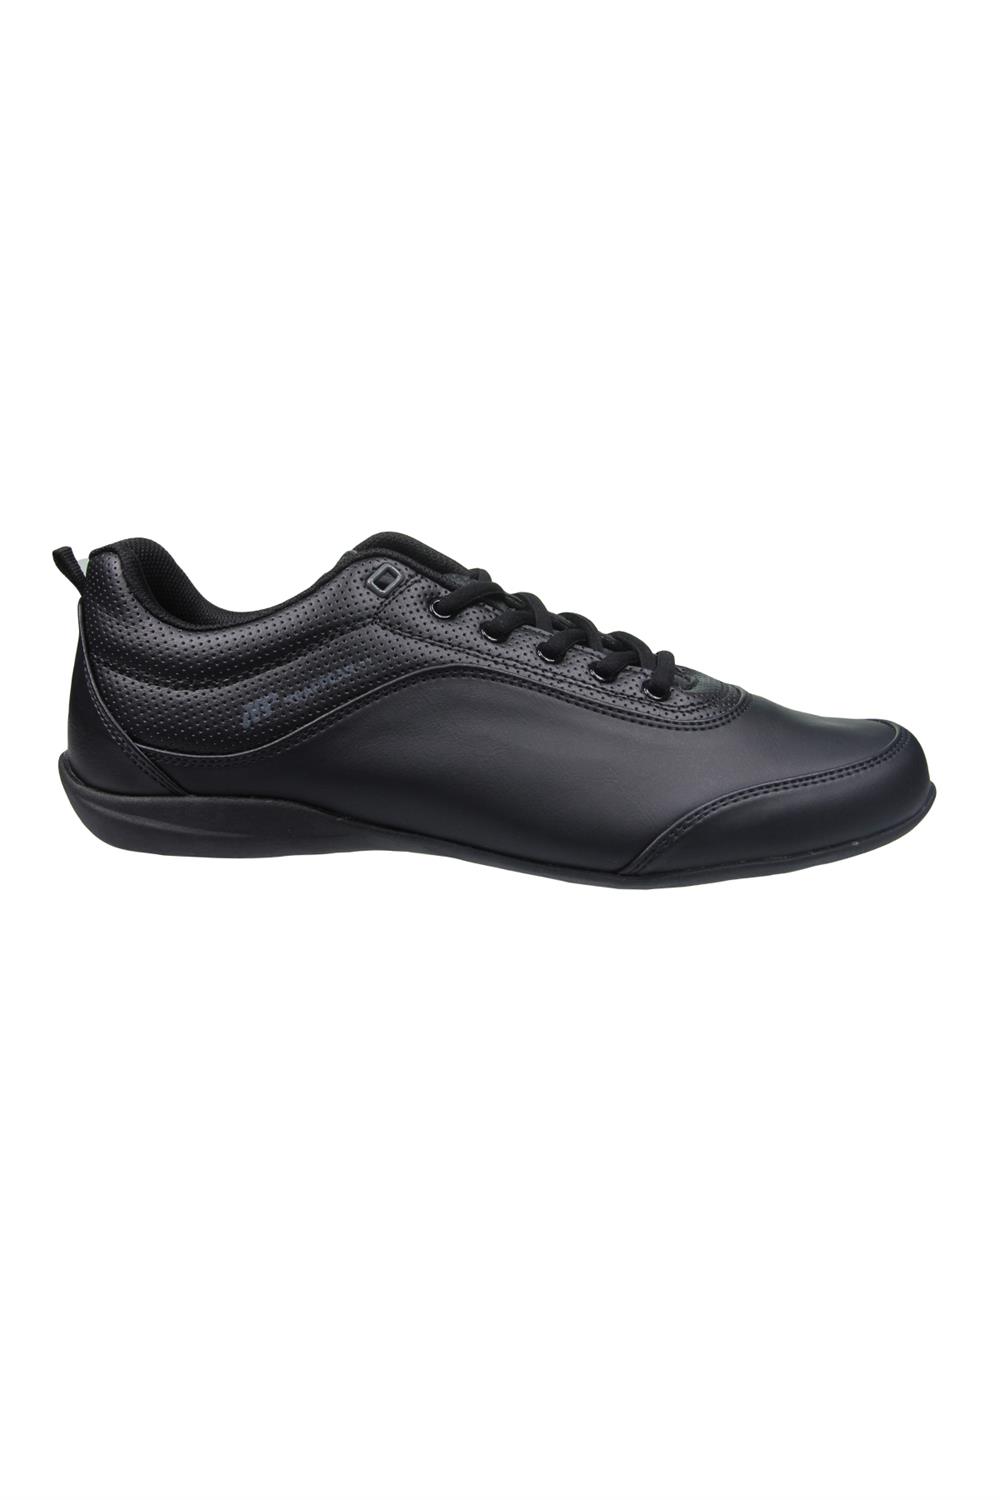 MP Erkek Bağcıklı Siyah Spor Ayakkabı l 231-7332MR 100